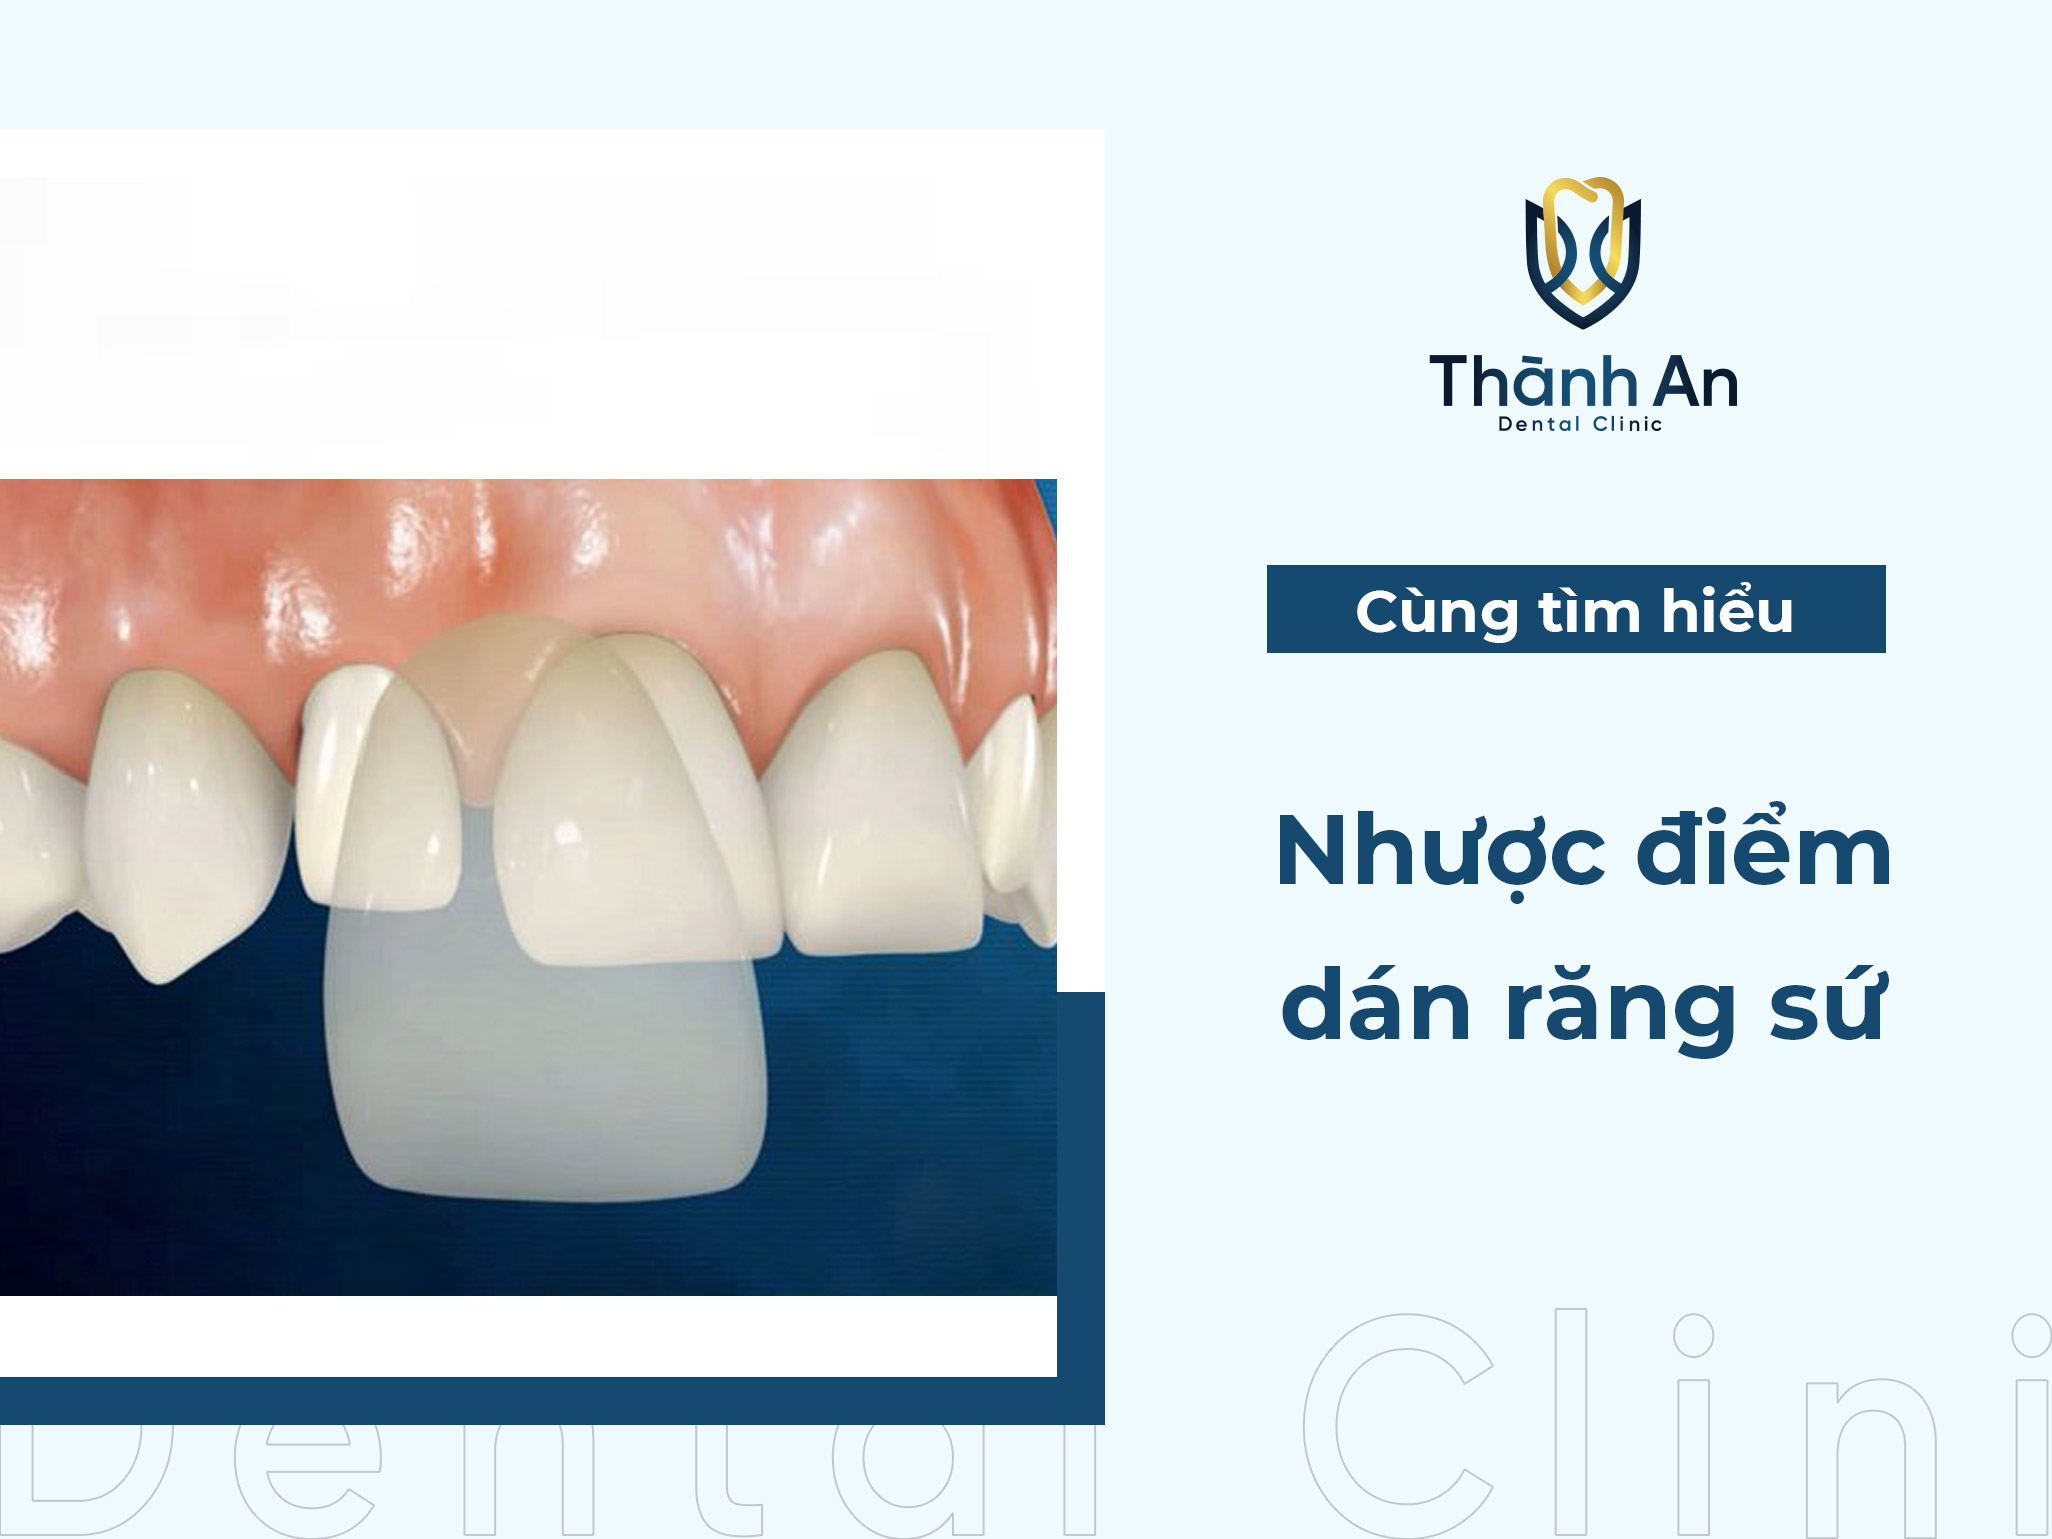  Top 4 nhược điểm của dán răng sứ trước khi thực hiện, bạn nên biết